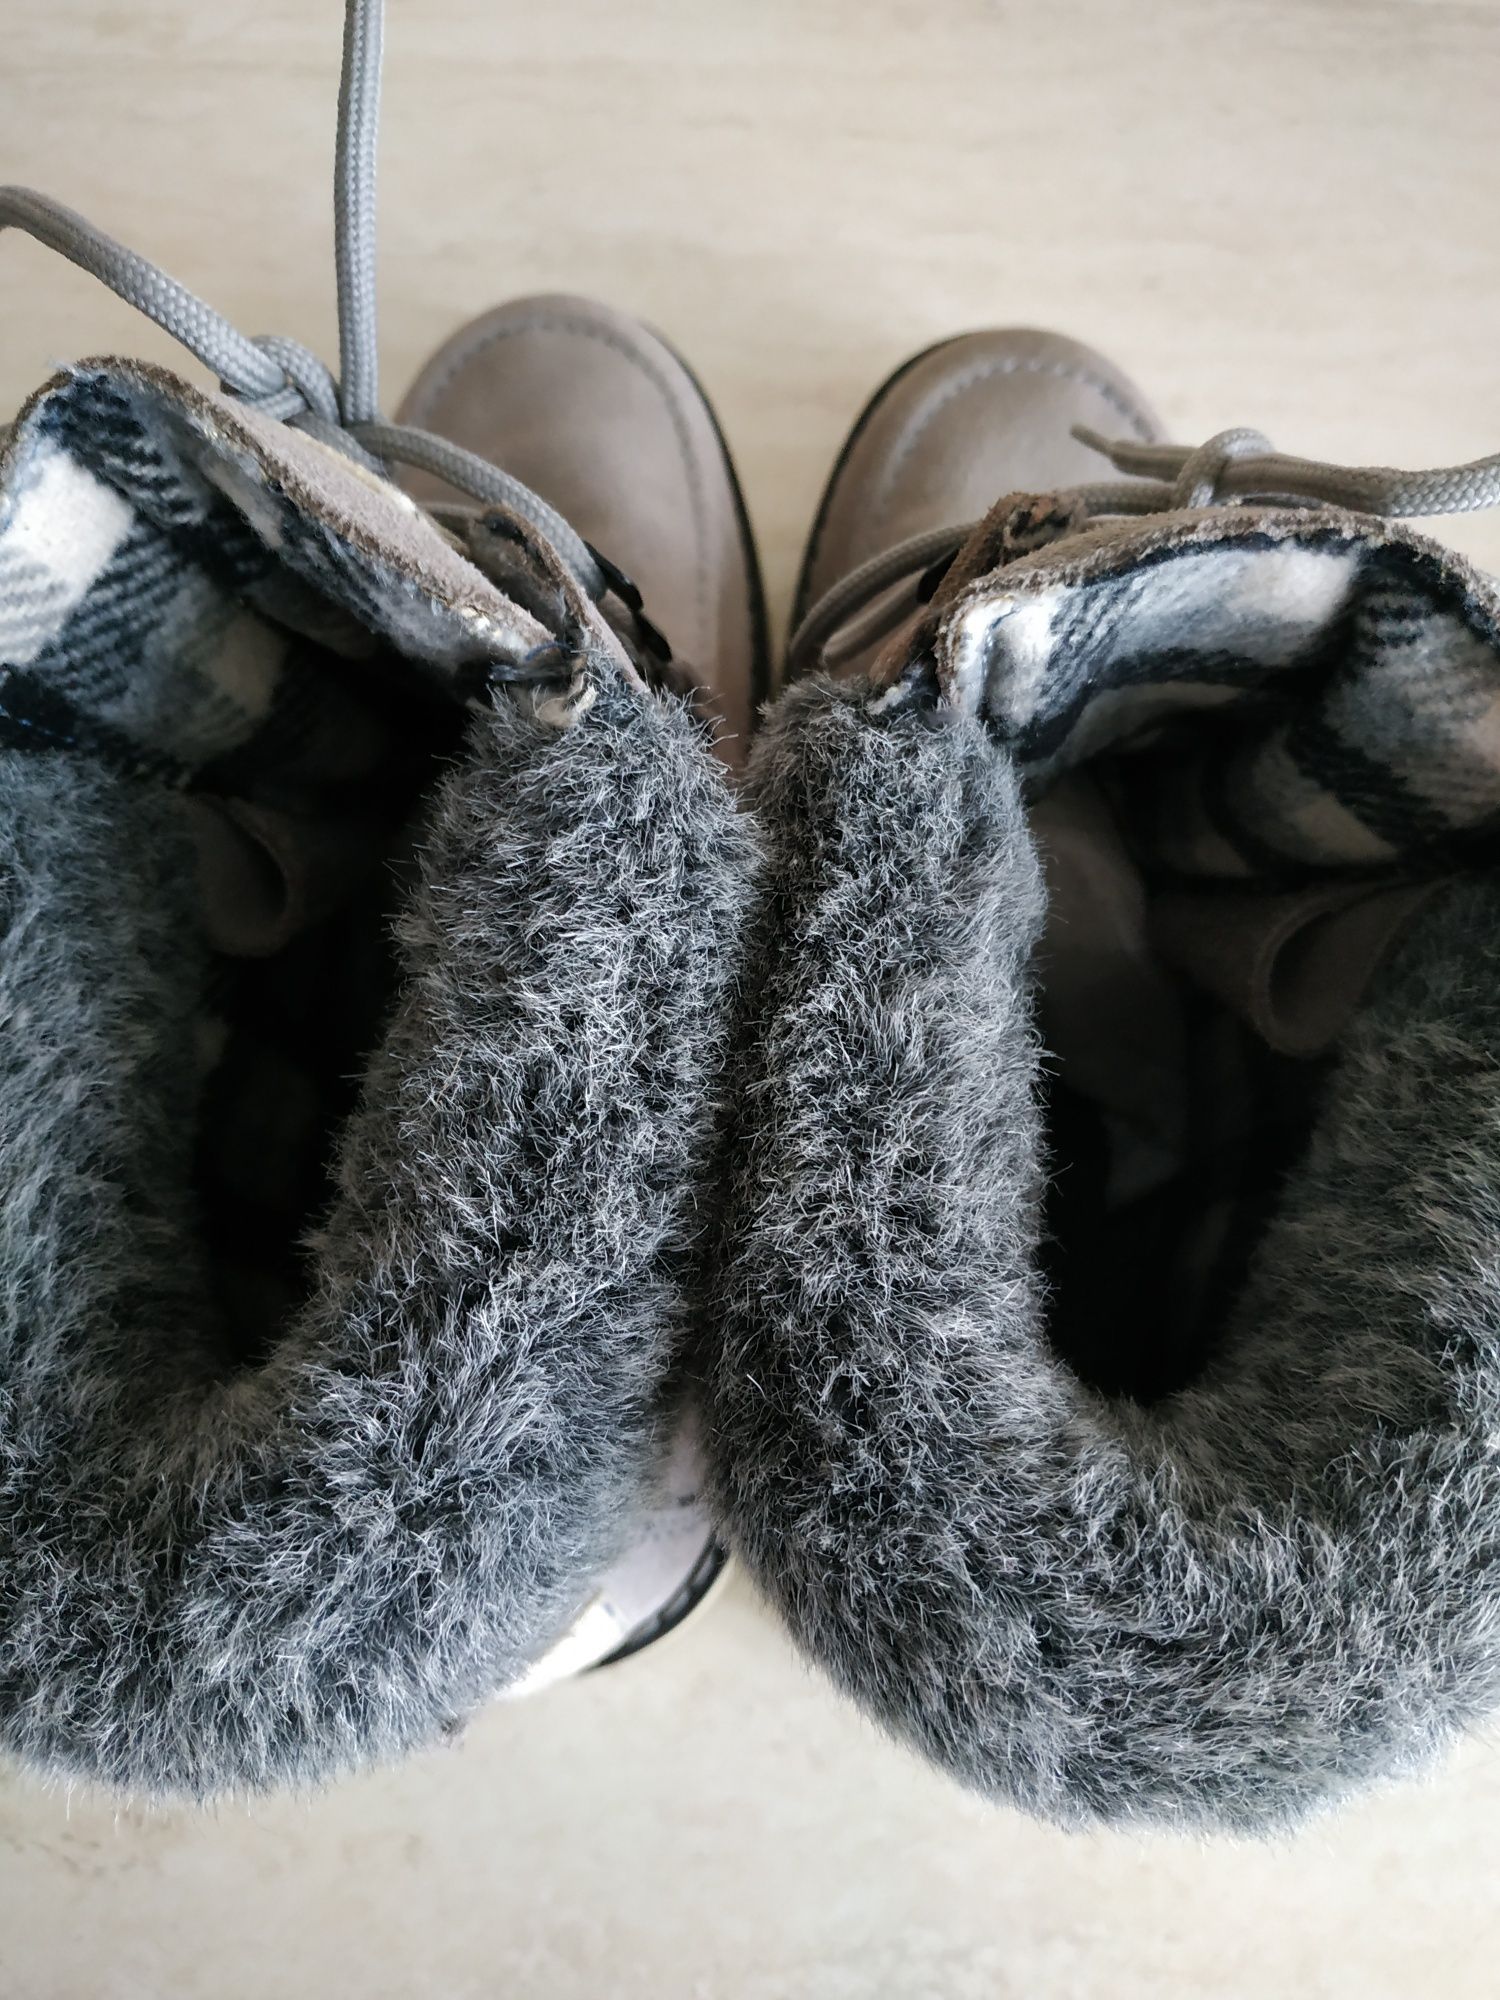 Чоловічі черевики Roxy, натуральна шкіра/замша, демісезон/тепла зима